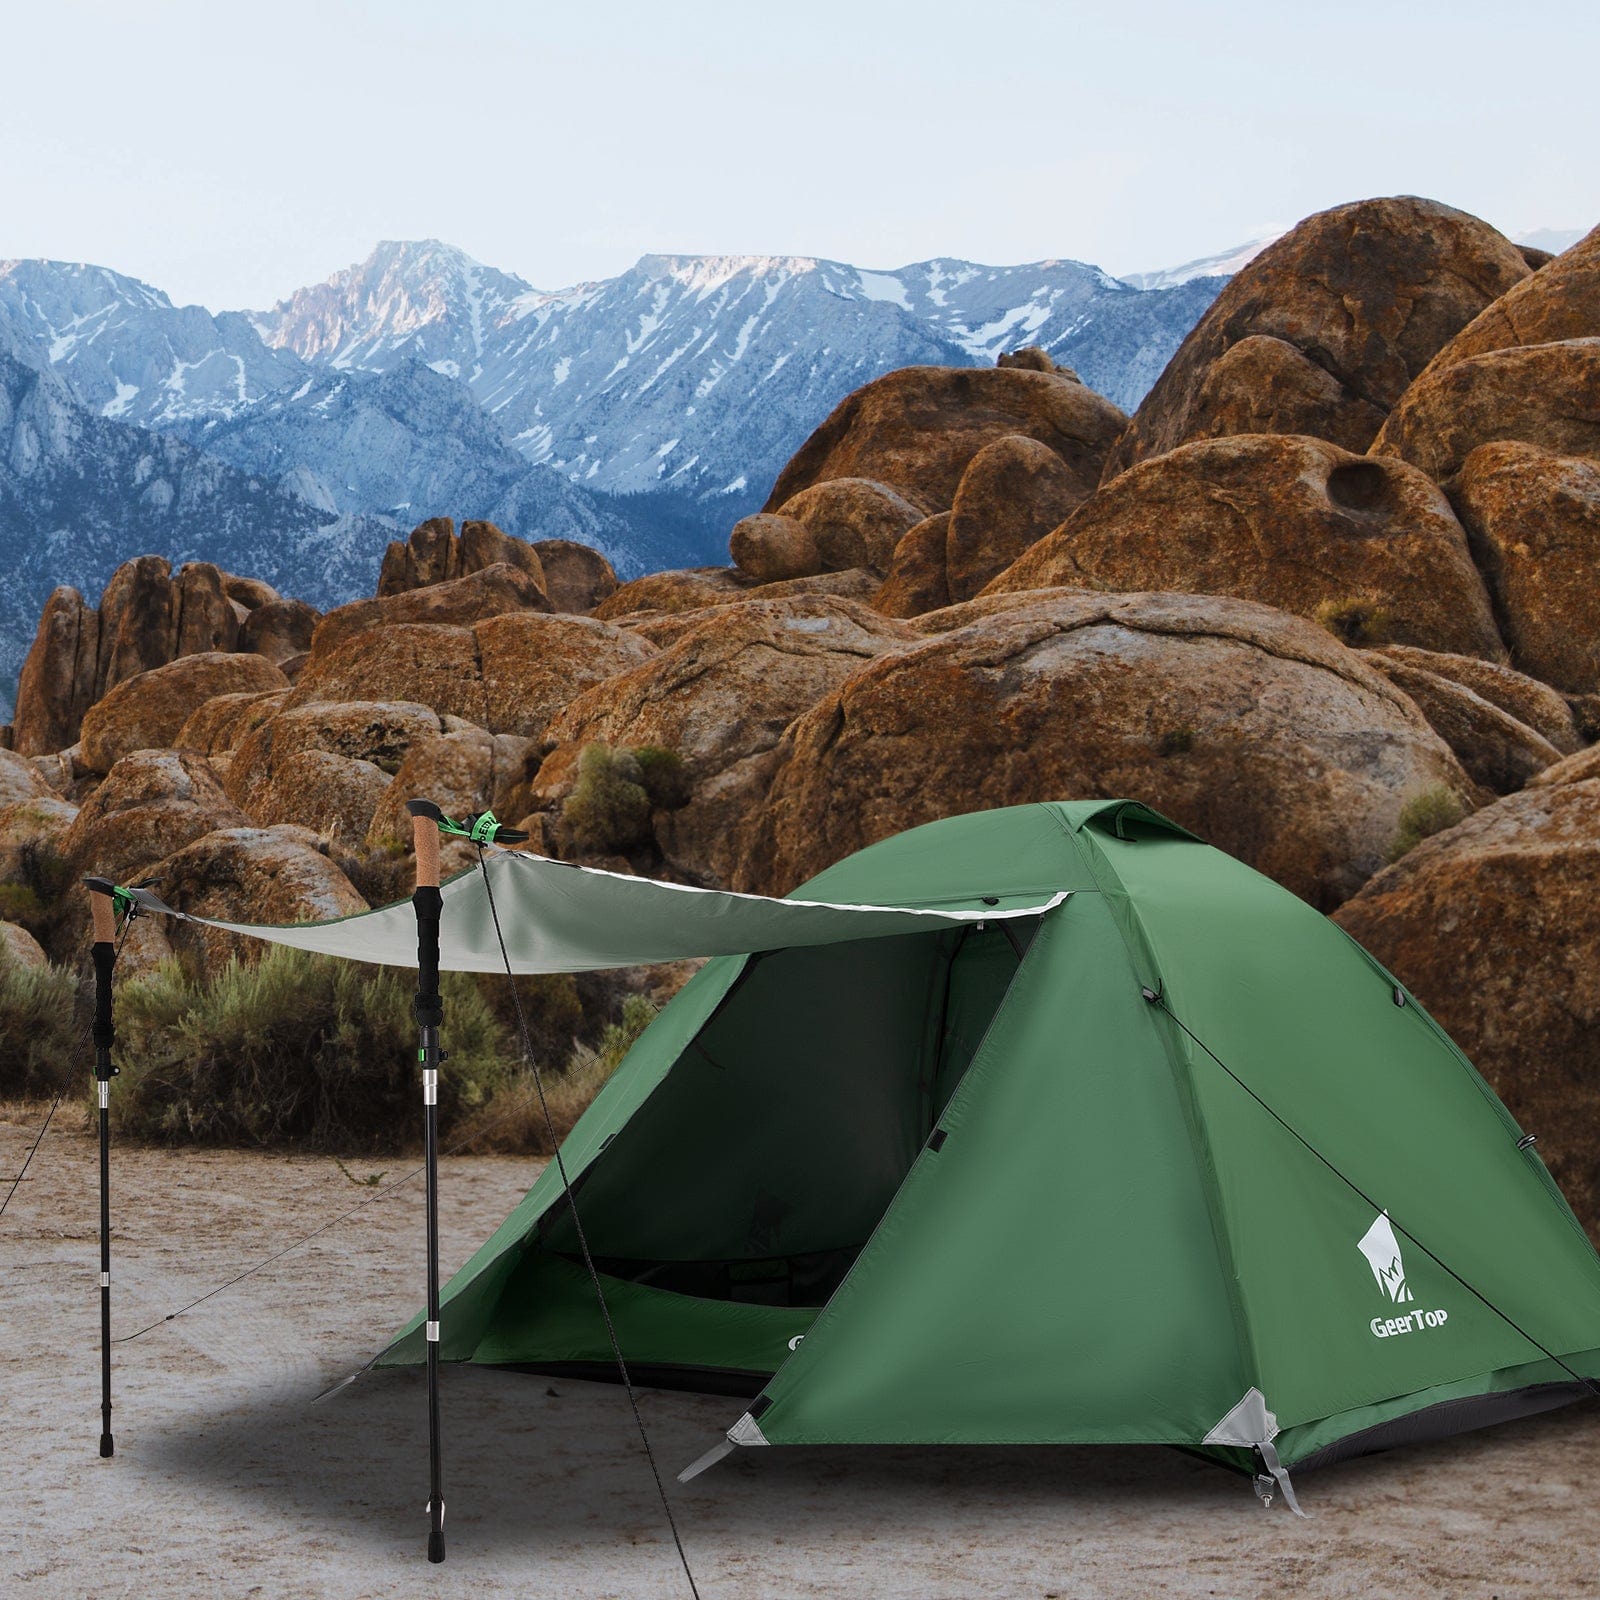 GeerTop Outdoor Store Tents GeerTop 2 Person 3 Season Camping Tent